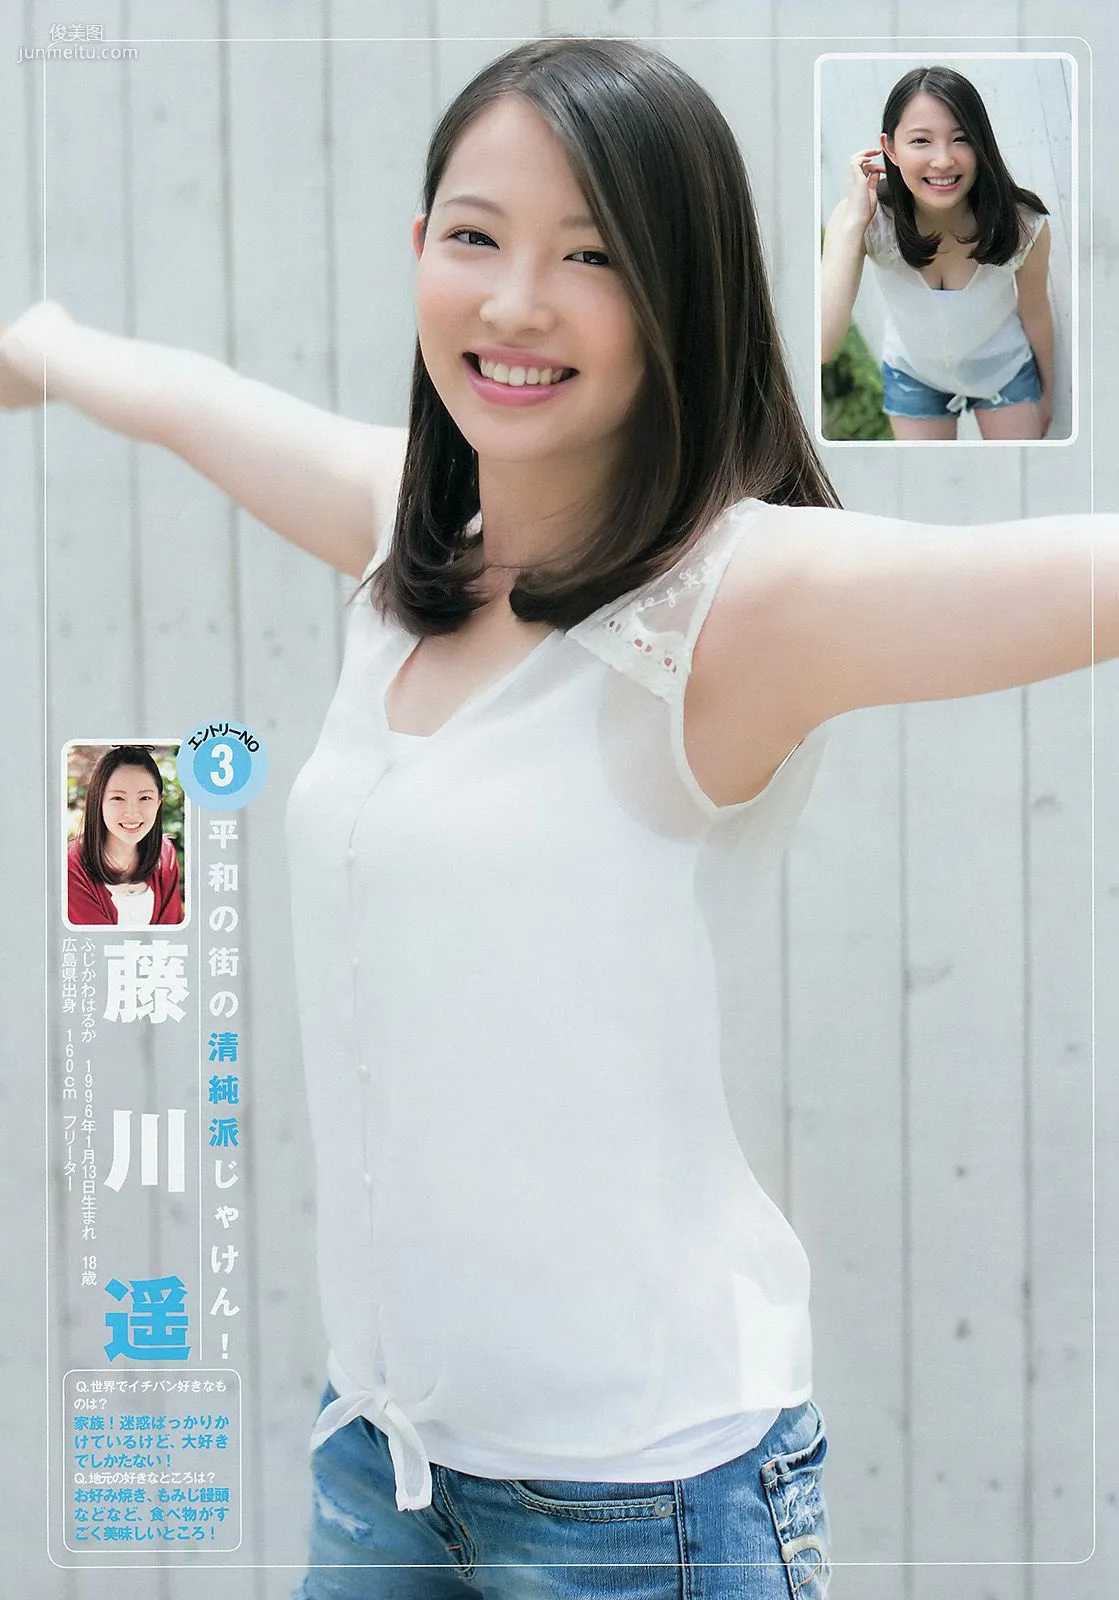 ギャルコン2014 制コレ アルティメット2014 大阪DAIZY7 [Weekly Young Jump] 2014年No.42 写真杂志4